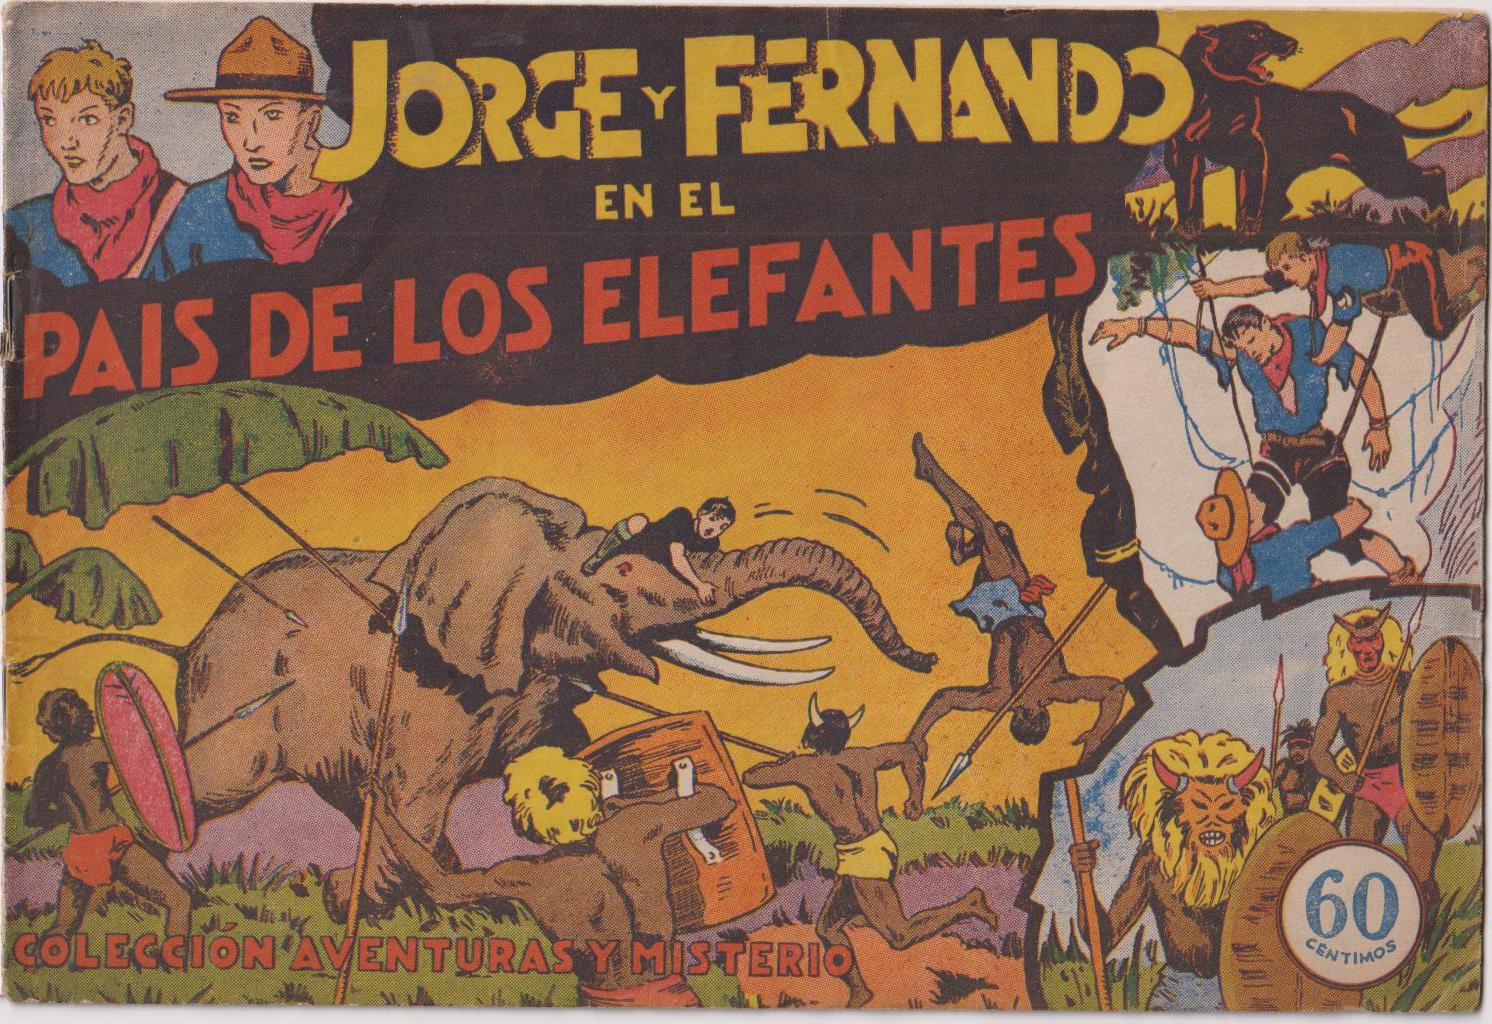 Jorge y Fernando nº 1. En el país de los elefantes. Hispano Americana 1940